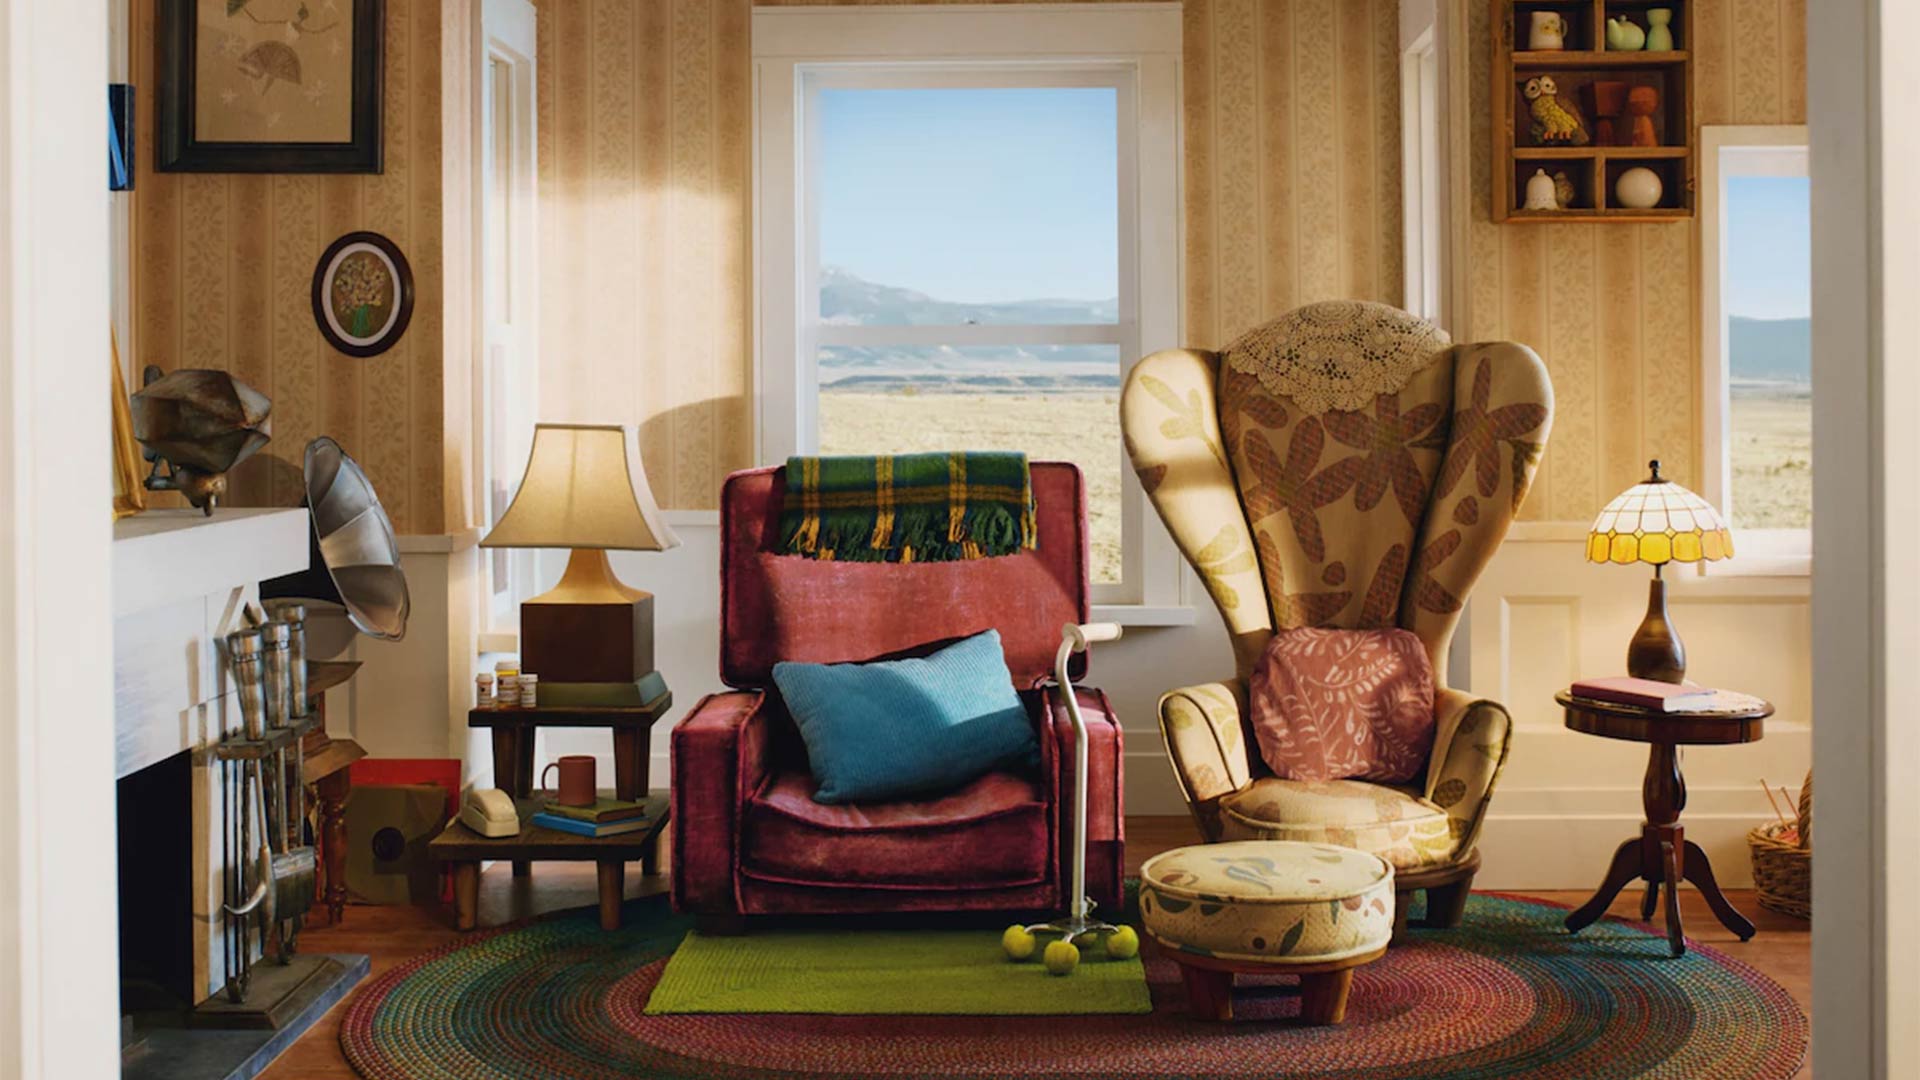 Airbnb pone en renta una casa inspirada en la casa del filme 'Up'